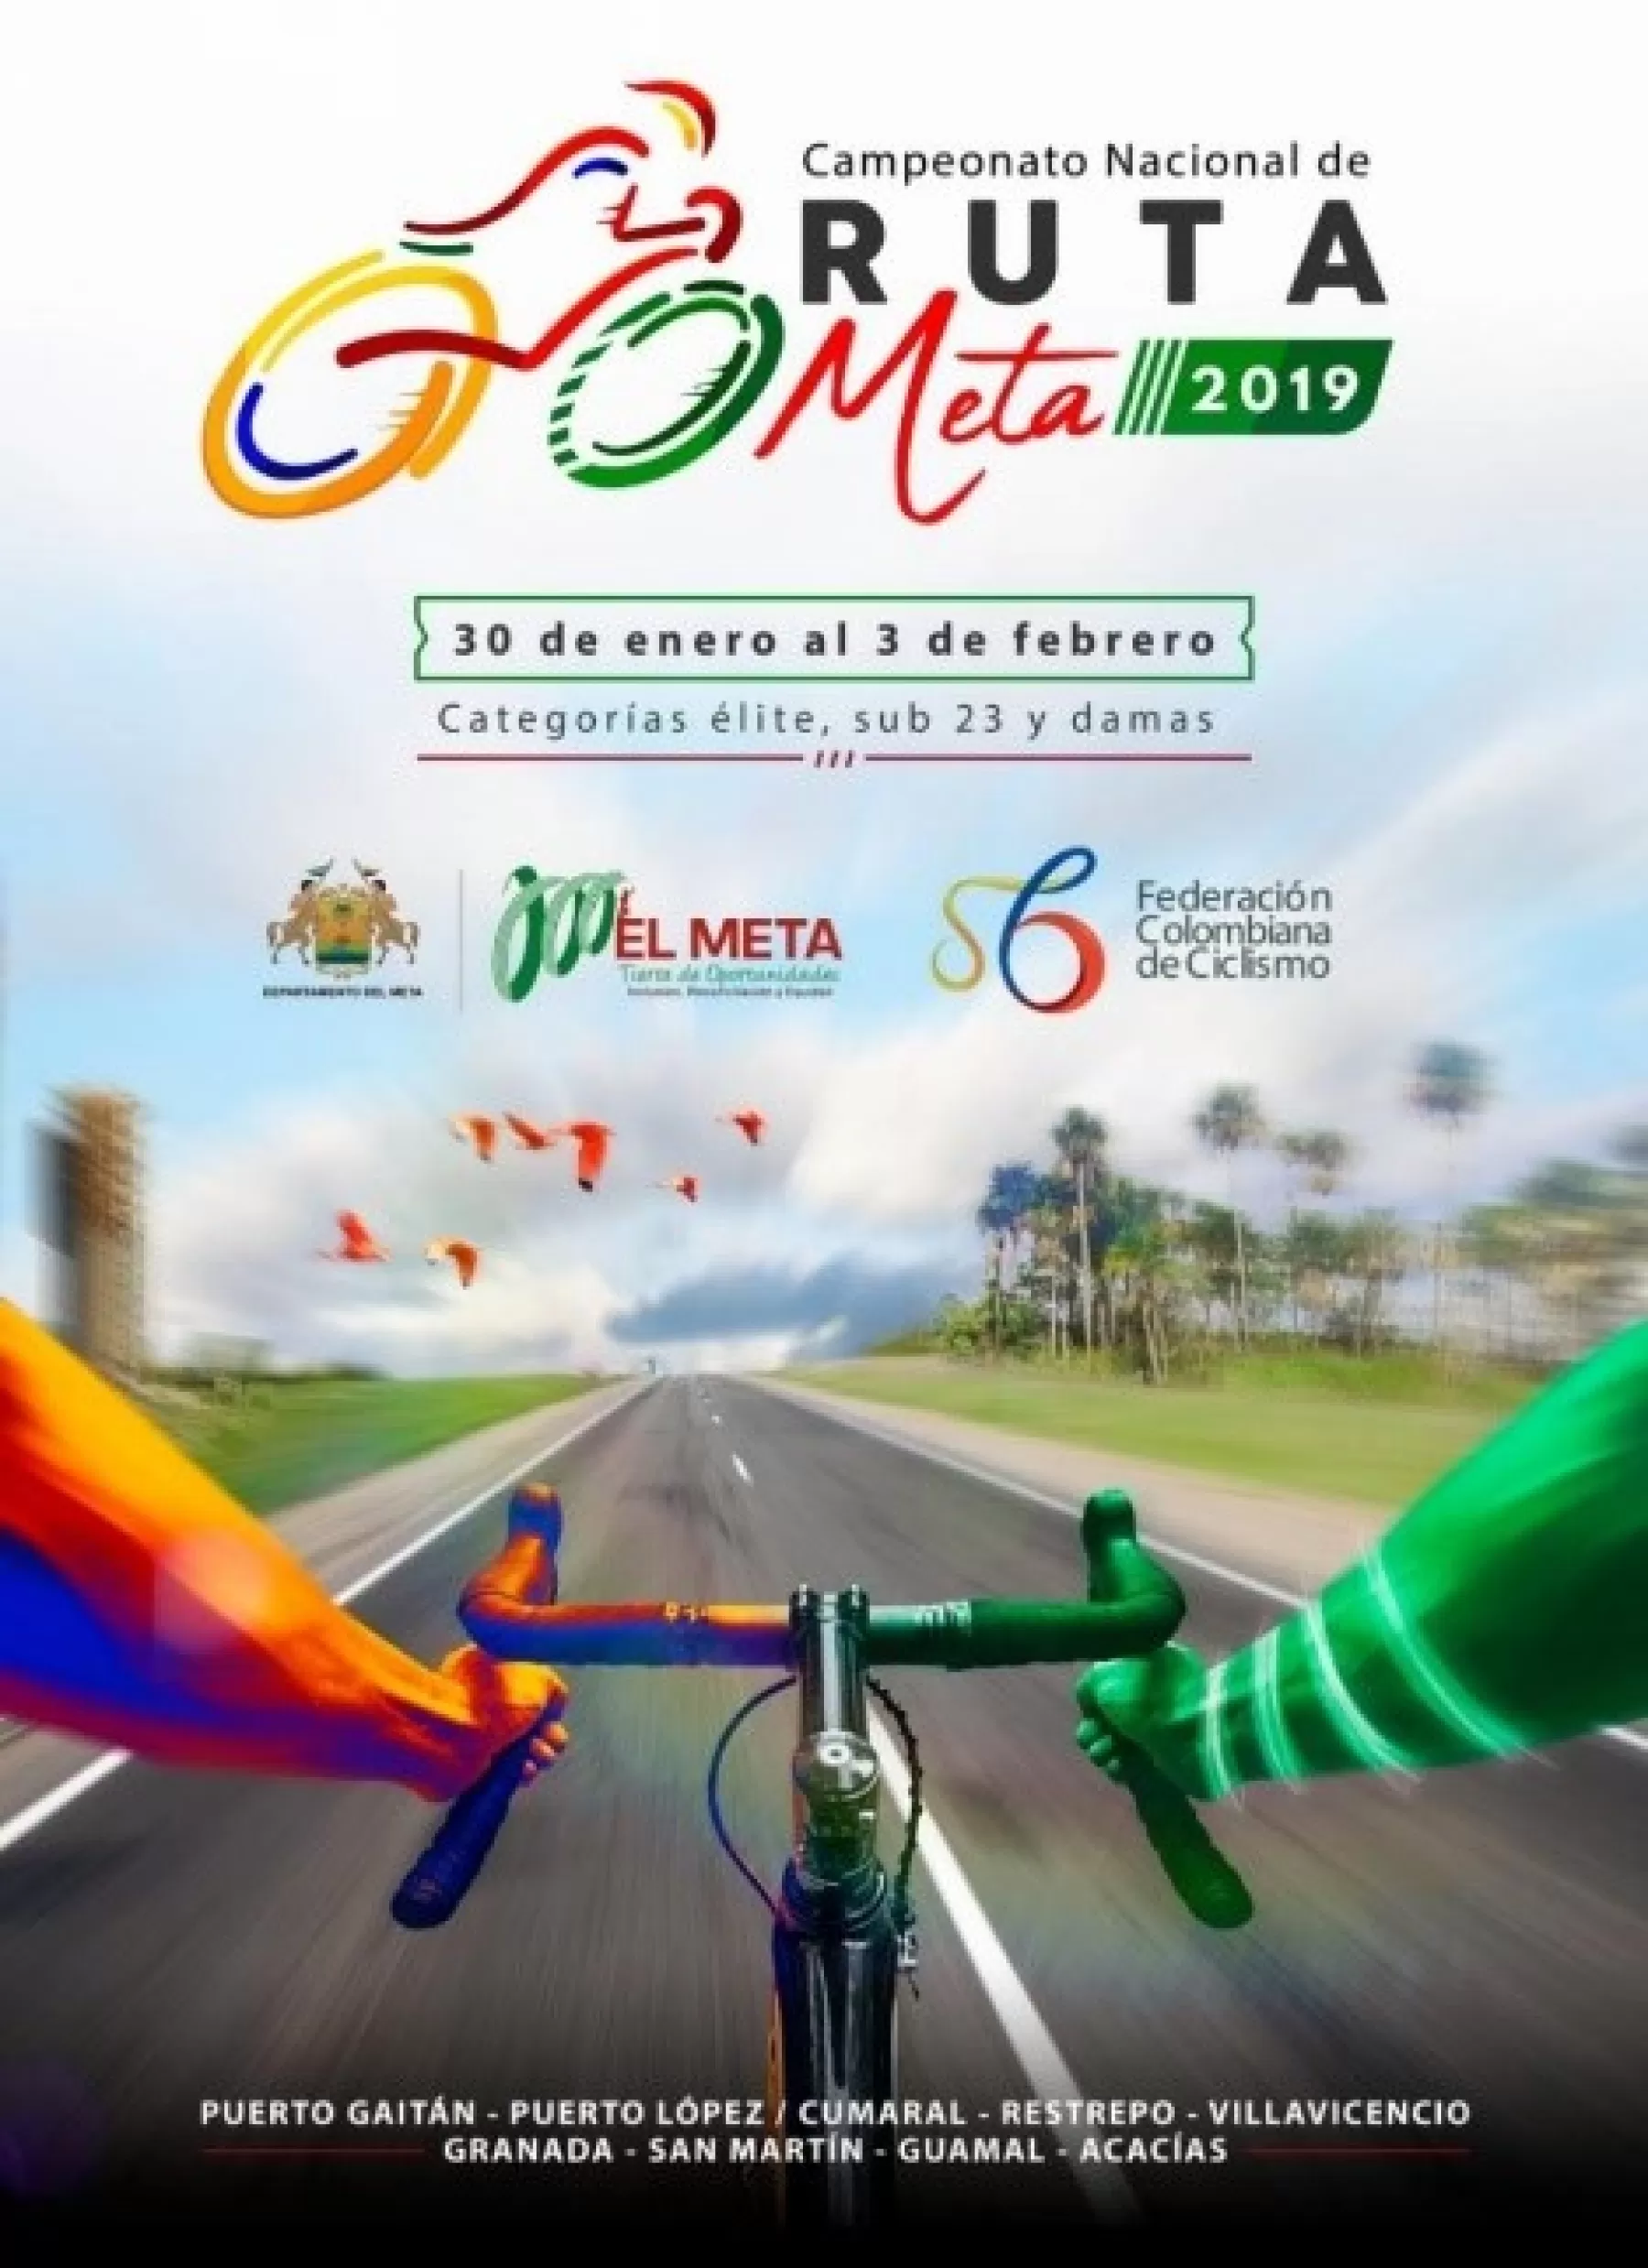 El  Campeonato Nacional de ruta 2019,  se vivirá en el departamento del Meta del 30 de enero al 3 de febrero del año entrante.